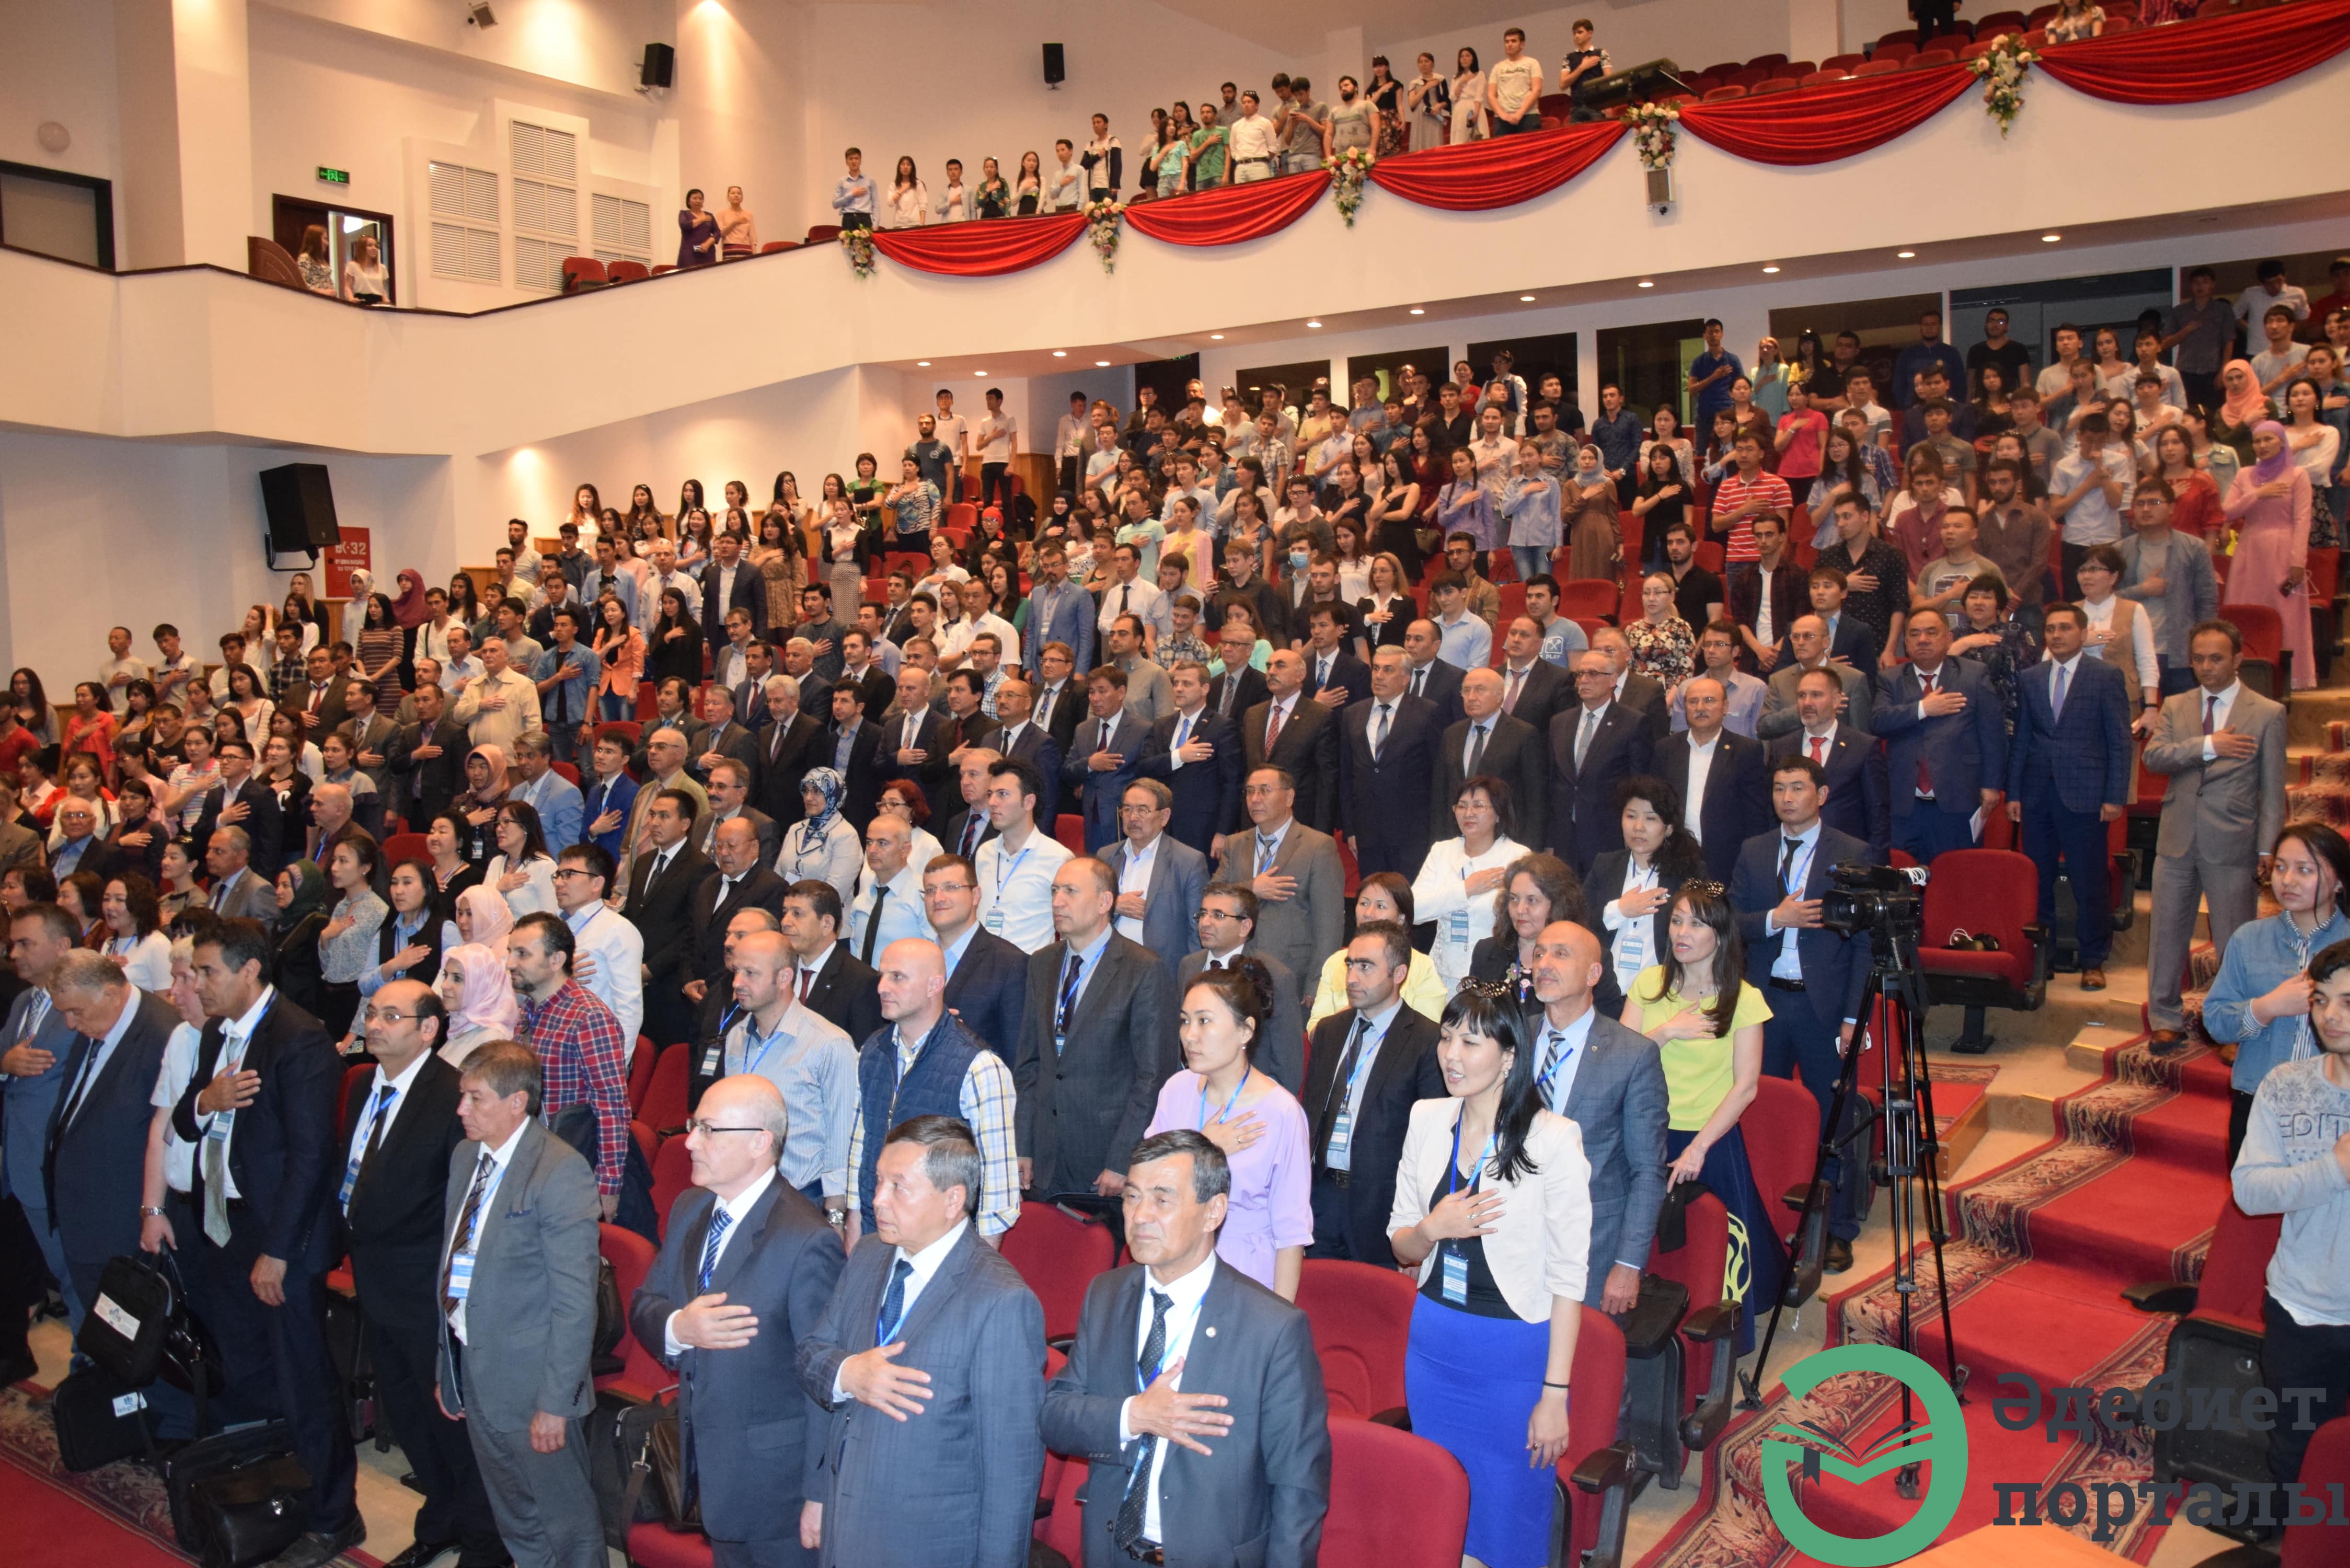 Халықаралық әлеуметтік ғылымдар конгресі: ІІІ Түркістан форумы  - фото 96 - adebiportal.kz